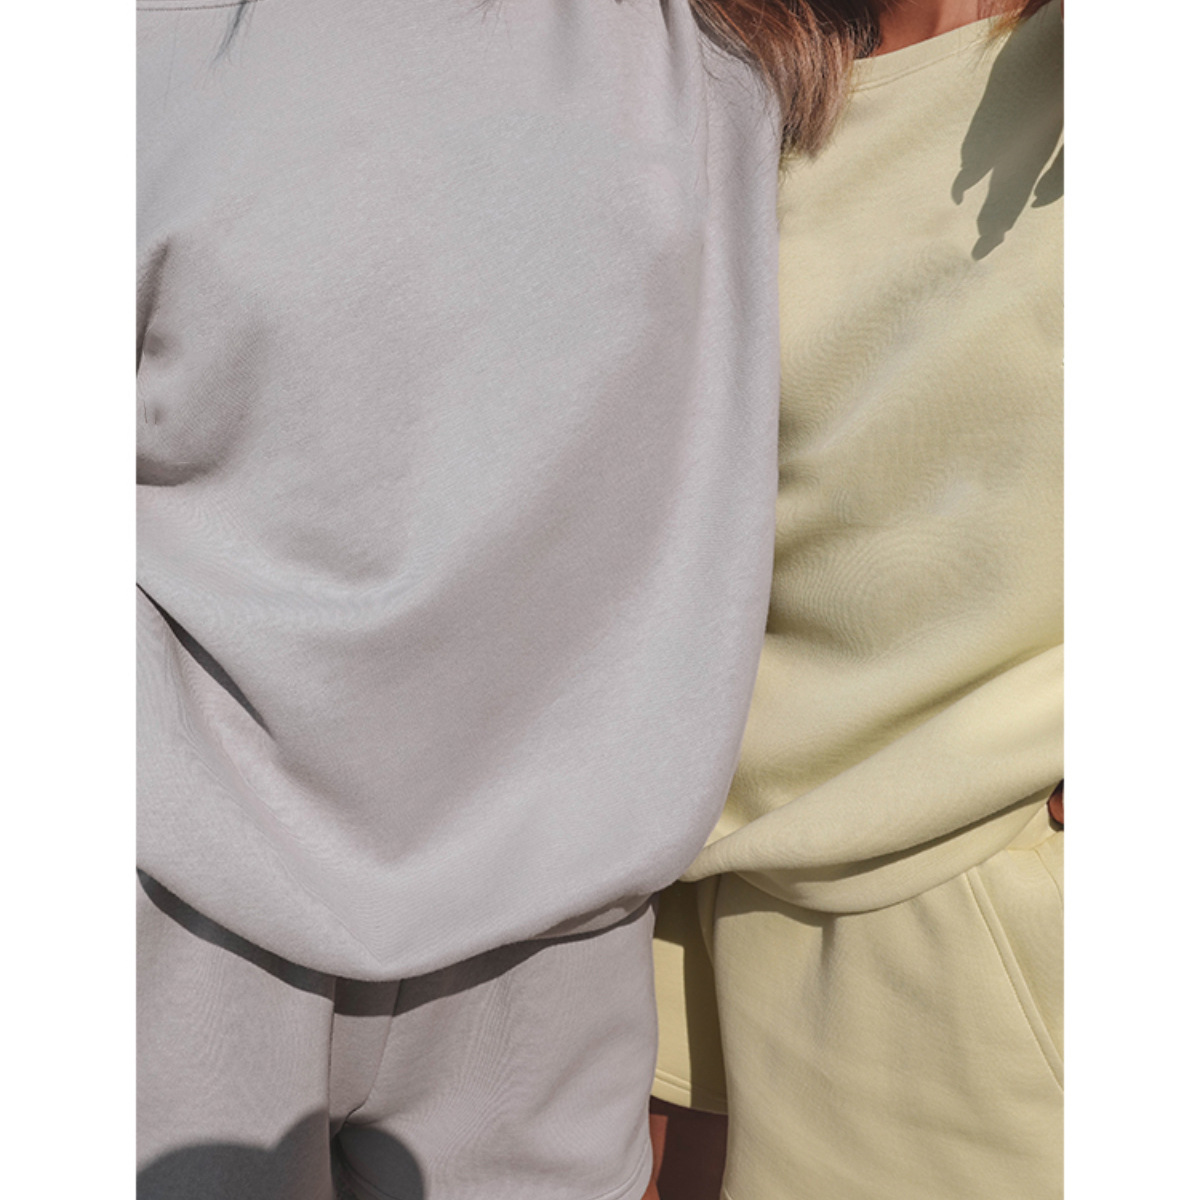 Solid Color Casual Shorts & Sweatshirt 2-Piece Set NSMUZ72371